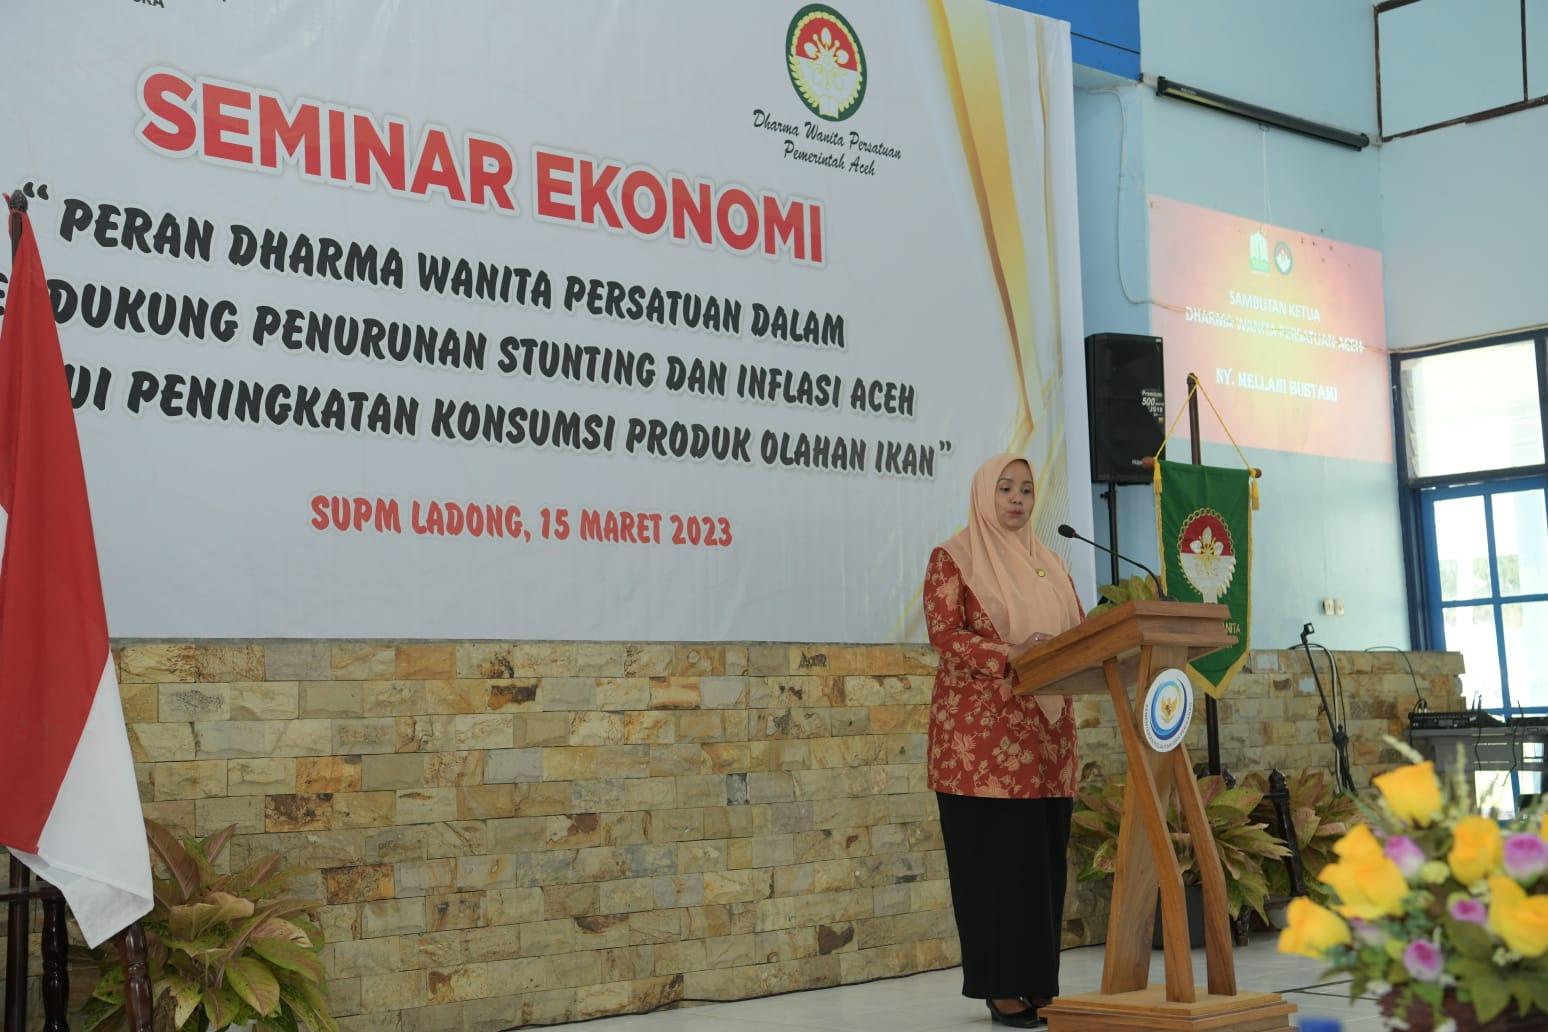 Ketua Dharma Wanita Persatuan (DWP) Aceh, Mellani Subarni, memberikan sambutan dan arahan saat membuka Seminar Ekonomi "Peran Dharma Wanita Persatuan dalam Mendukung Penurunan Stunting dan Inflasi Aceh Melalui Peningkatan Konsumsi Produk Olahan Ikan", di SUPM Negeri Ladong Aceh, Rabu, (15/3/2023).